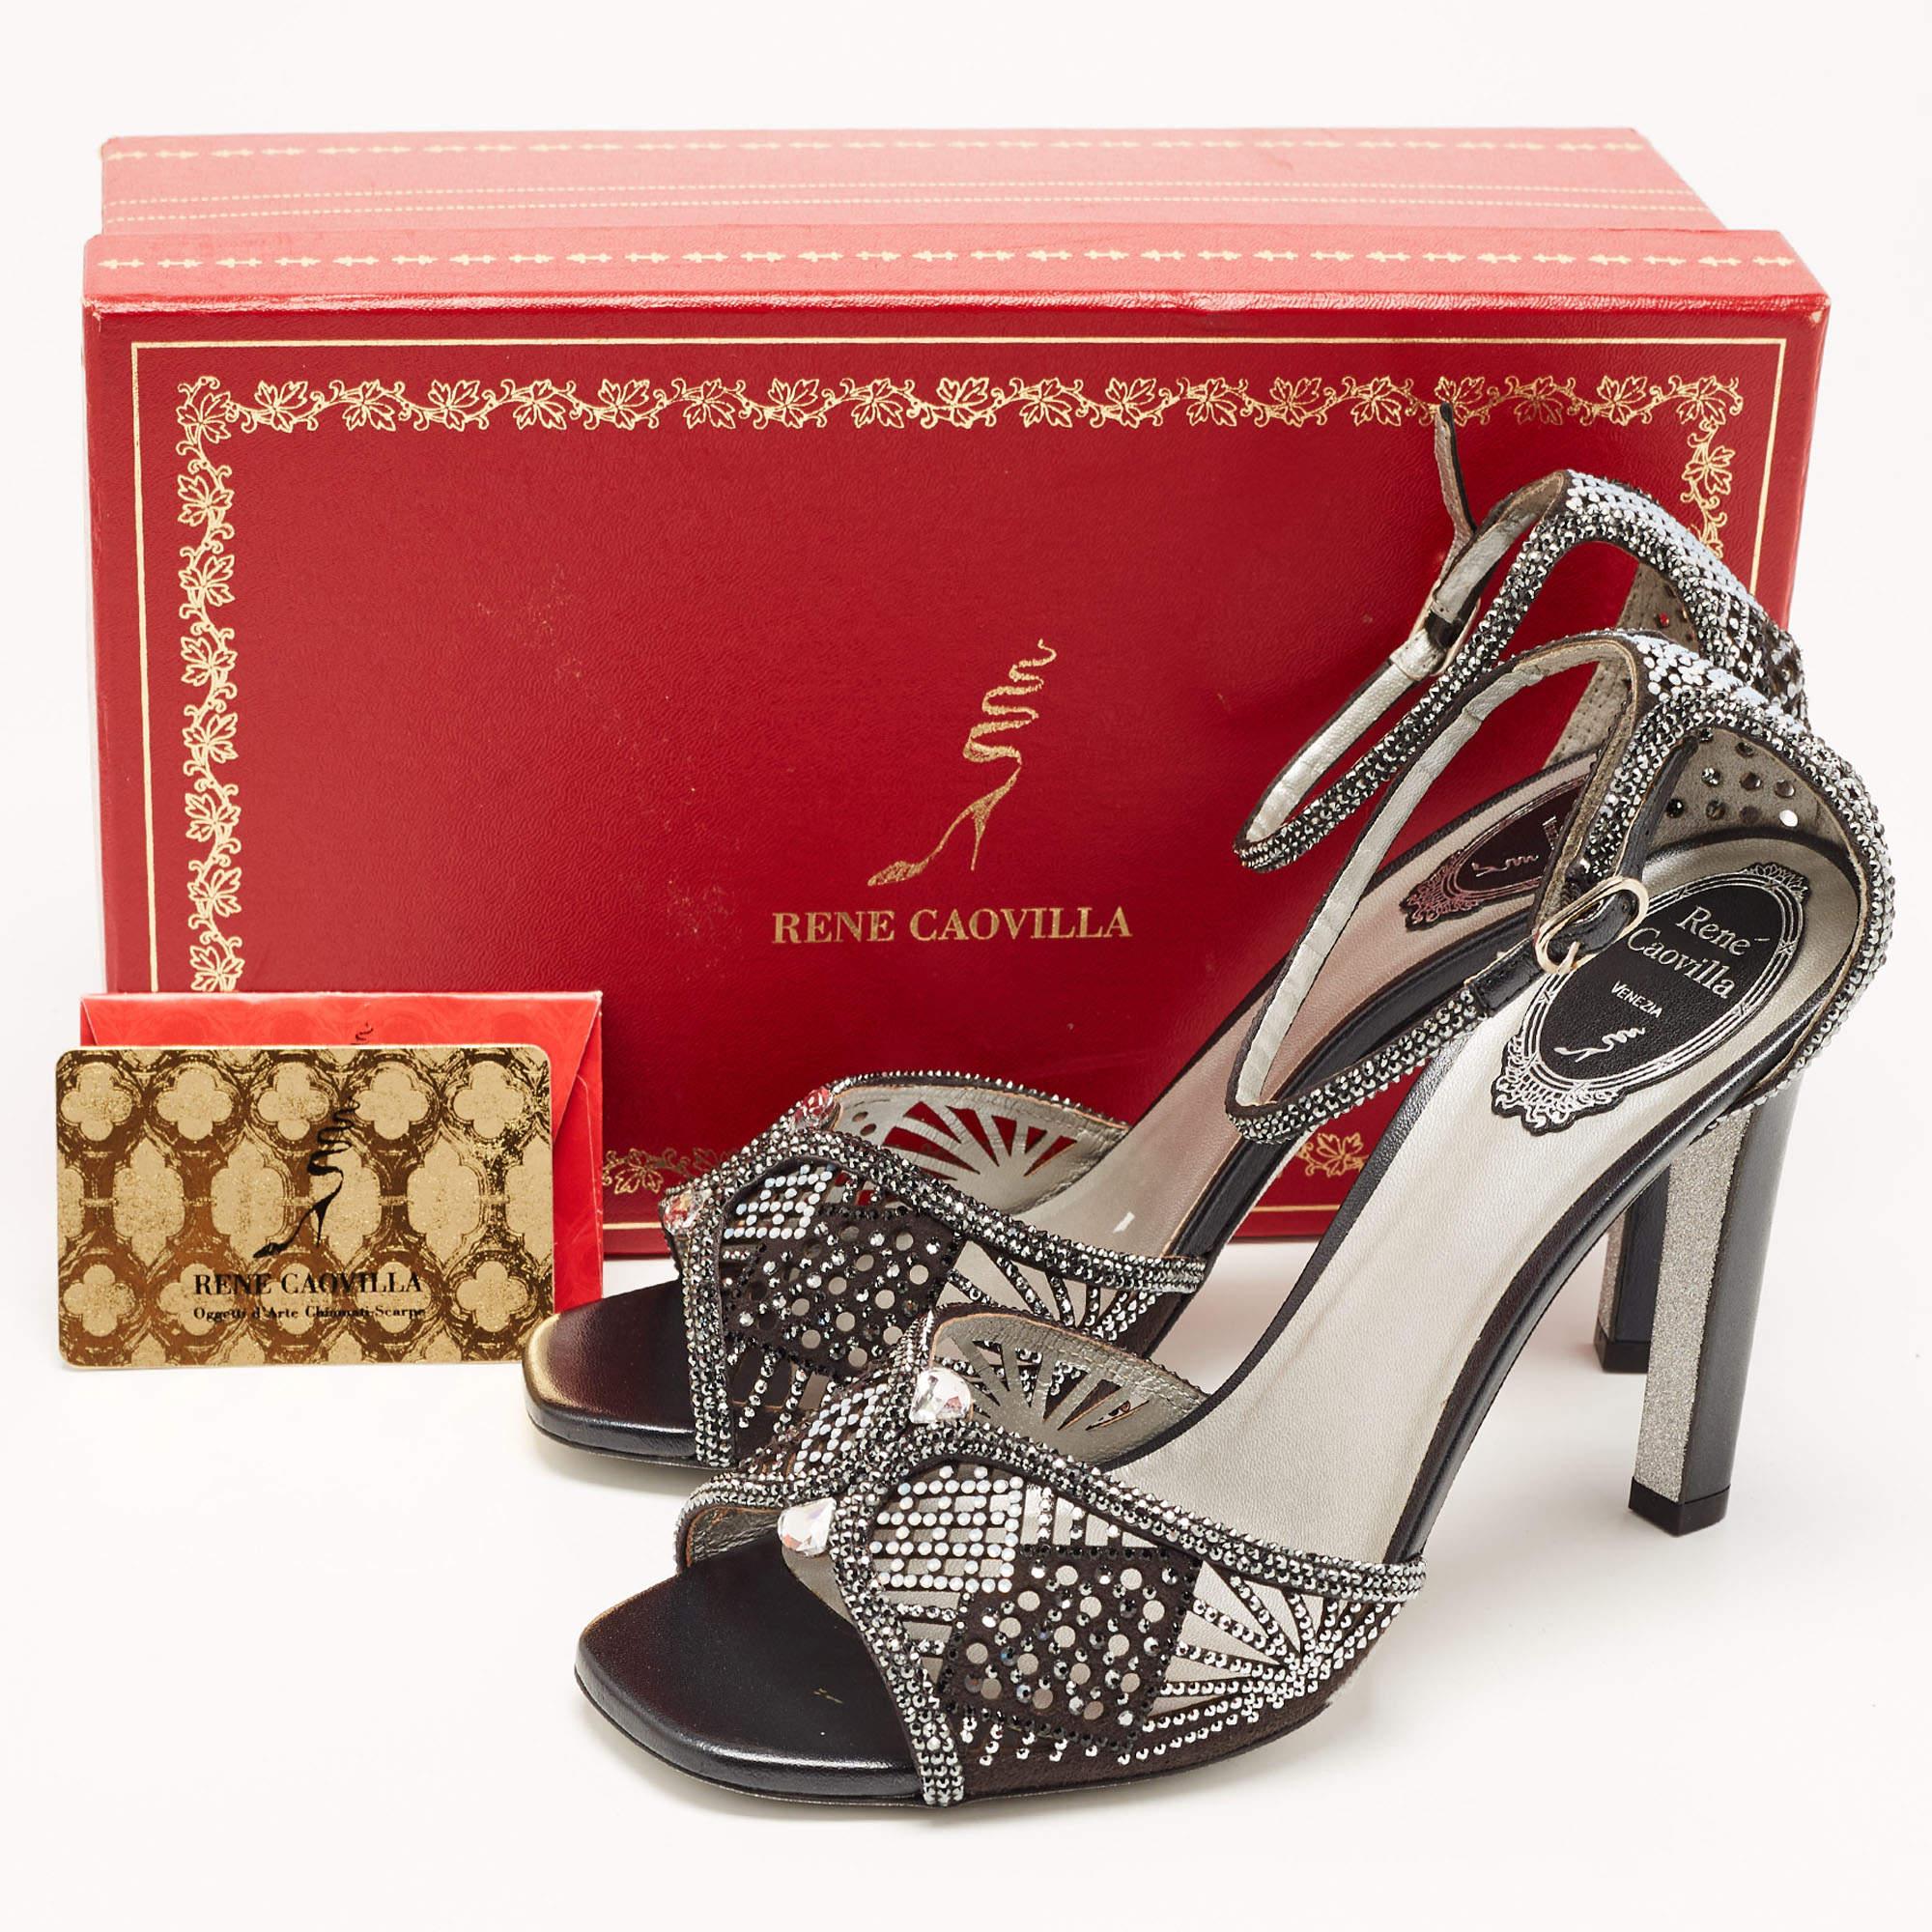 René Caovilla Black Suede Crystal Embellished Ankle Strap Sandals Size 39 5